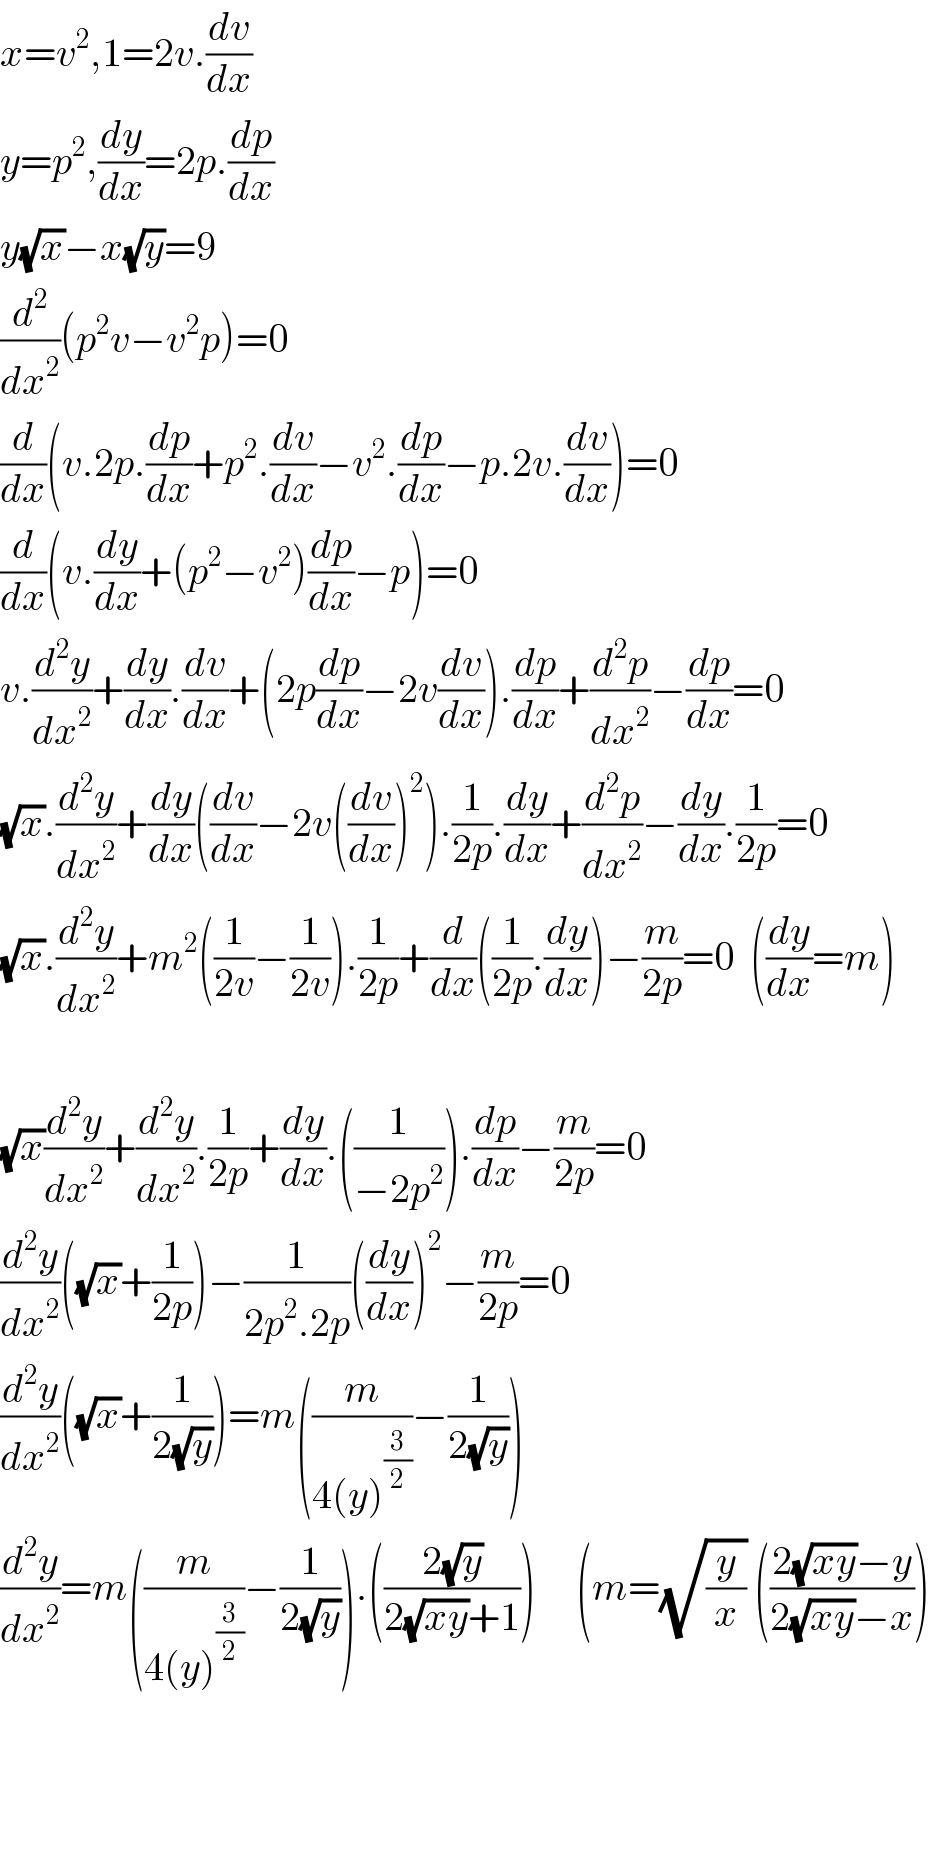 x=v^2 ,1=2v.(dv/dx)  y=p^2 ,(dy/dx)=2p.(dp/dx)  y(√x)−x(√y)=9  (d^2 /dx^2 )(p^2 v−v^2 p)=0  (d/dx)(v.2p.(dp/dx)+p^2 .(dv/dx)−v^2 .(dp/dx)−p.2v.(dv/dx))=0  (d/dx)(v.(dy/dx)+(p^2 −v^2 )(dp/dx)−p)=0  v.(d^2 y/dx^2 )+(dy/dx).(dv/dx)+(2p(dp/dx)−2v(dv/dx)).(dp/dx)+(d^2 p/dx^2 )−(dp/dx)=0  (√x).(d^2 y/dx^2 )+(dy/dx)((dv/dx)−2v((dv/dx))^2 ).(1/(2p)).(dy/dx)+(d^2 p/dx^2 )−(dy/dx).(1/(2p))=0  (√x).(d^2 y/dx^2 )+m^2 ((1/(2v))−(1/(2v))).(1/(2p))+(d/dx)((1/(2p)).(dy/dx))−(m/(2p))=0  ((dy/dx)=m)    (√x)(d^2 y/dx^2 )+(d^2 y/dx^2 ).(1/(2p))+(dy/dx).((1/(−2p^2 ))).(dp/dx)−(m/(2p))=0  (d^2 y/dx^2 )((√x)+(1/(2p)))−(1/(2p^2 .2p))((dy/dx))^2 −(m/(2p))=0  (d^2 y/dx^2 )((√x)+(1/(2(√y))))=m((m/(4(y)^(3/2) ))−(1/(2(√y))))  (d^2 y/dx^2 )=m((m/(4(y)^(3/2) ))−(1/(2(√y)))).(((2(√y))/(2(√(xy))+1)))     (m=(√(y/x)) (((2(√(xy))−y)/(2(√(xy))−x)))        